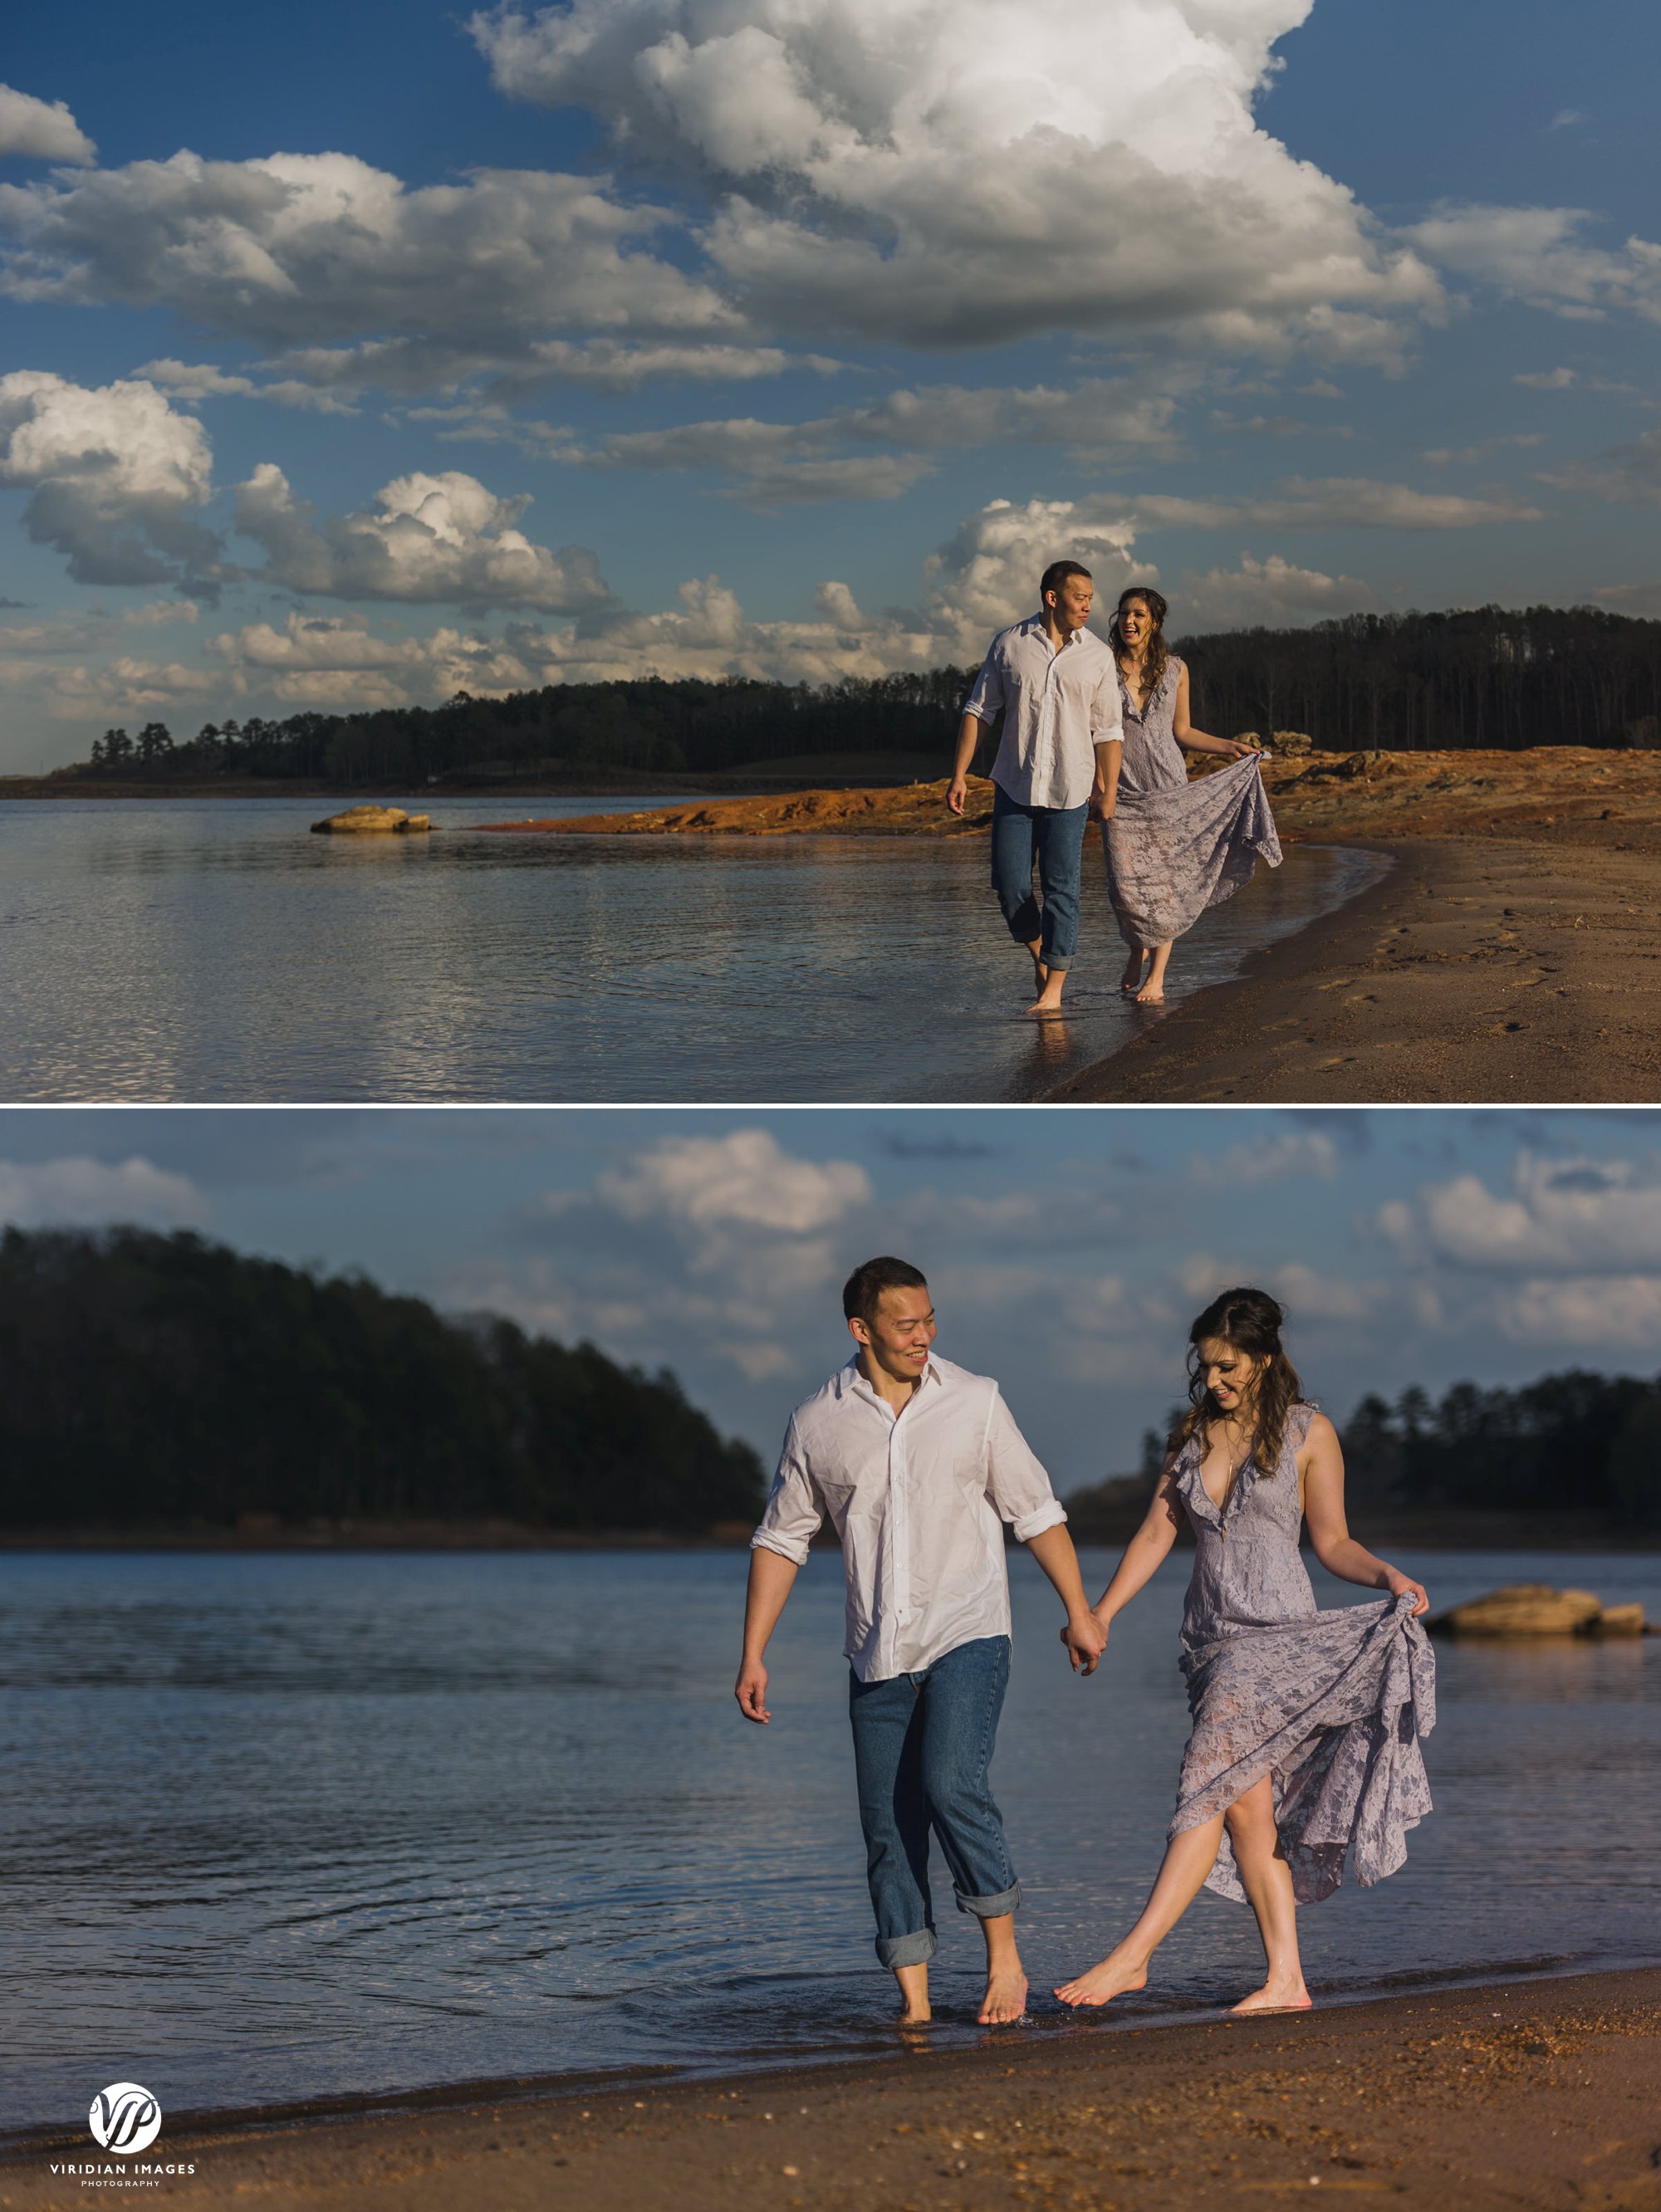 pineisle walking couple by lake